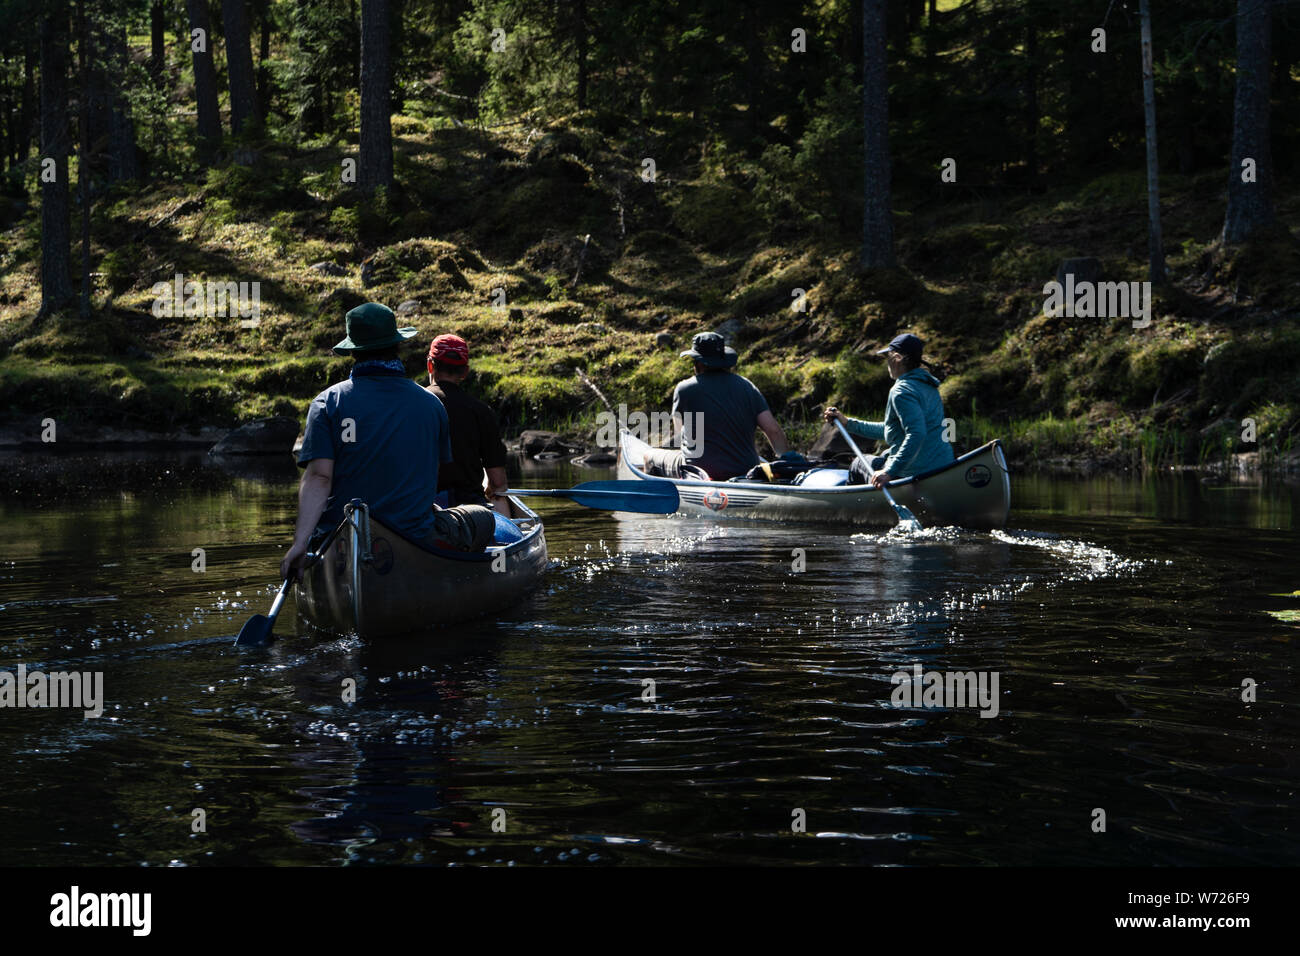 La gente canotaje en el Río Negro (Svartälven) en el desierto, Suecia Foto de stock